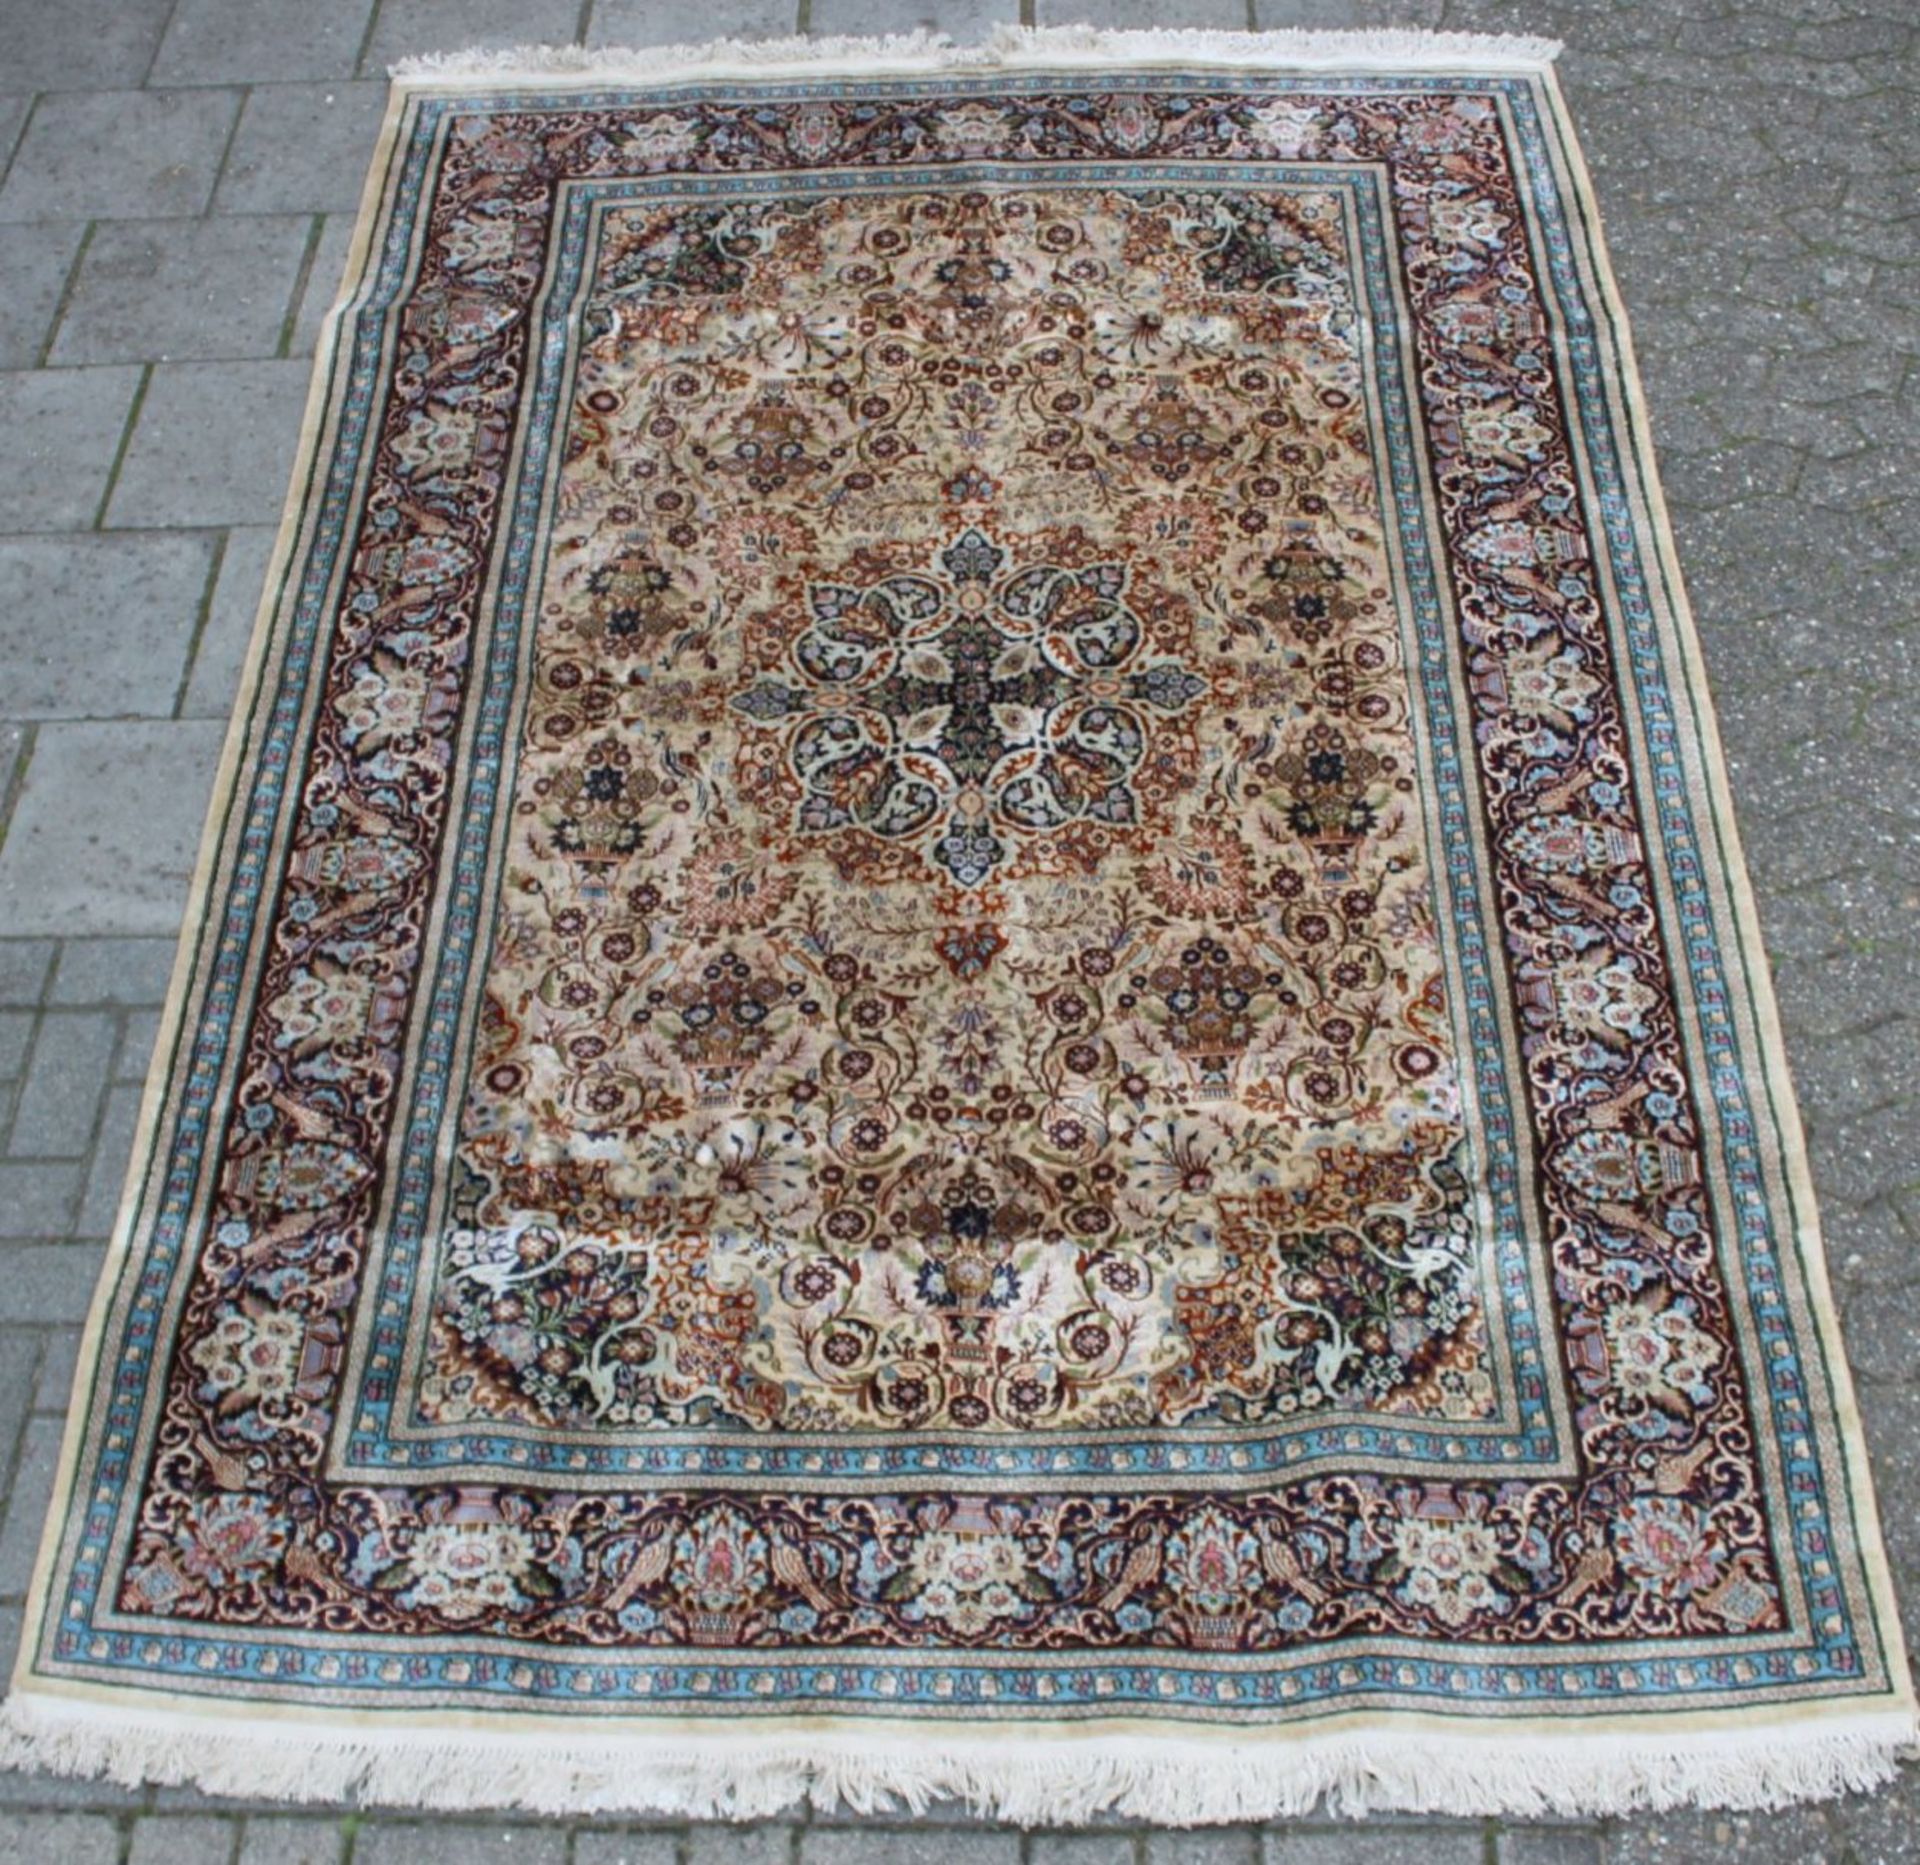 gr. Orientteppich, Seidenflor, schönes Muster, guter Zustand, 285 x 180cm. - Bild 2 aus 5